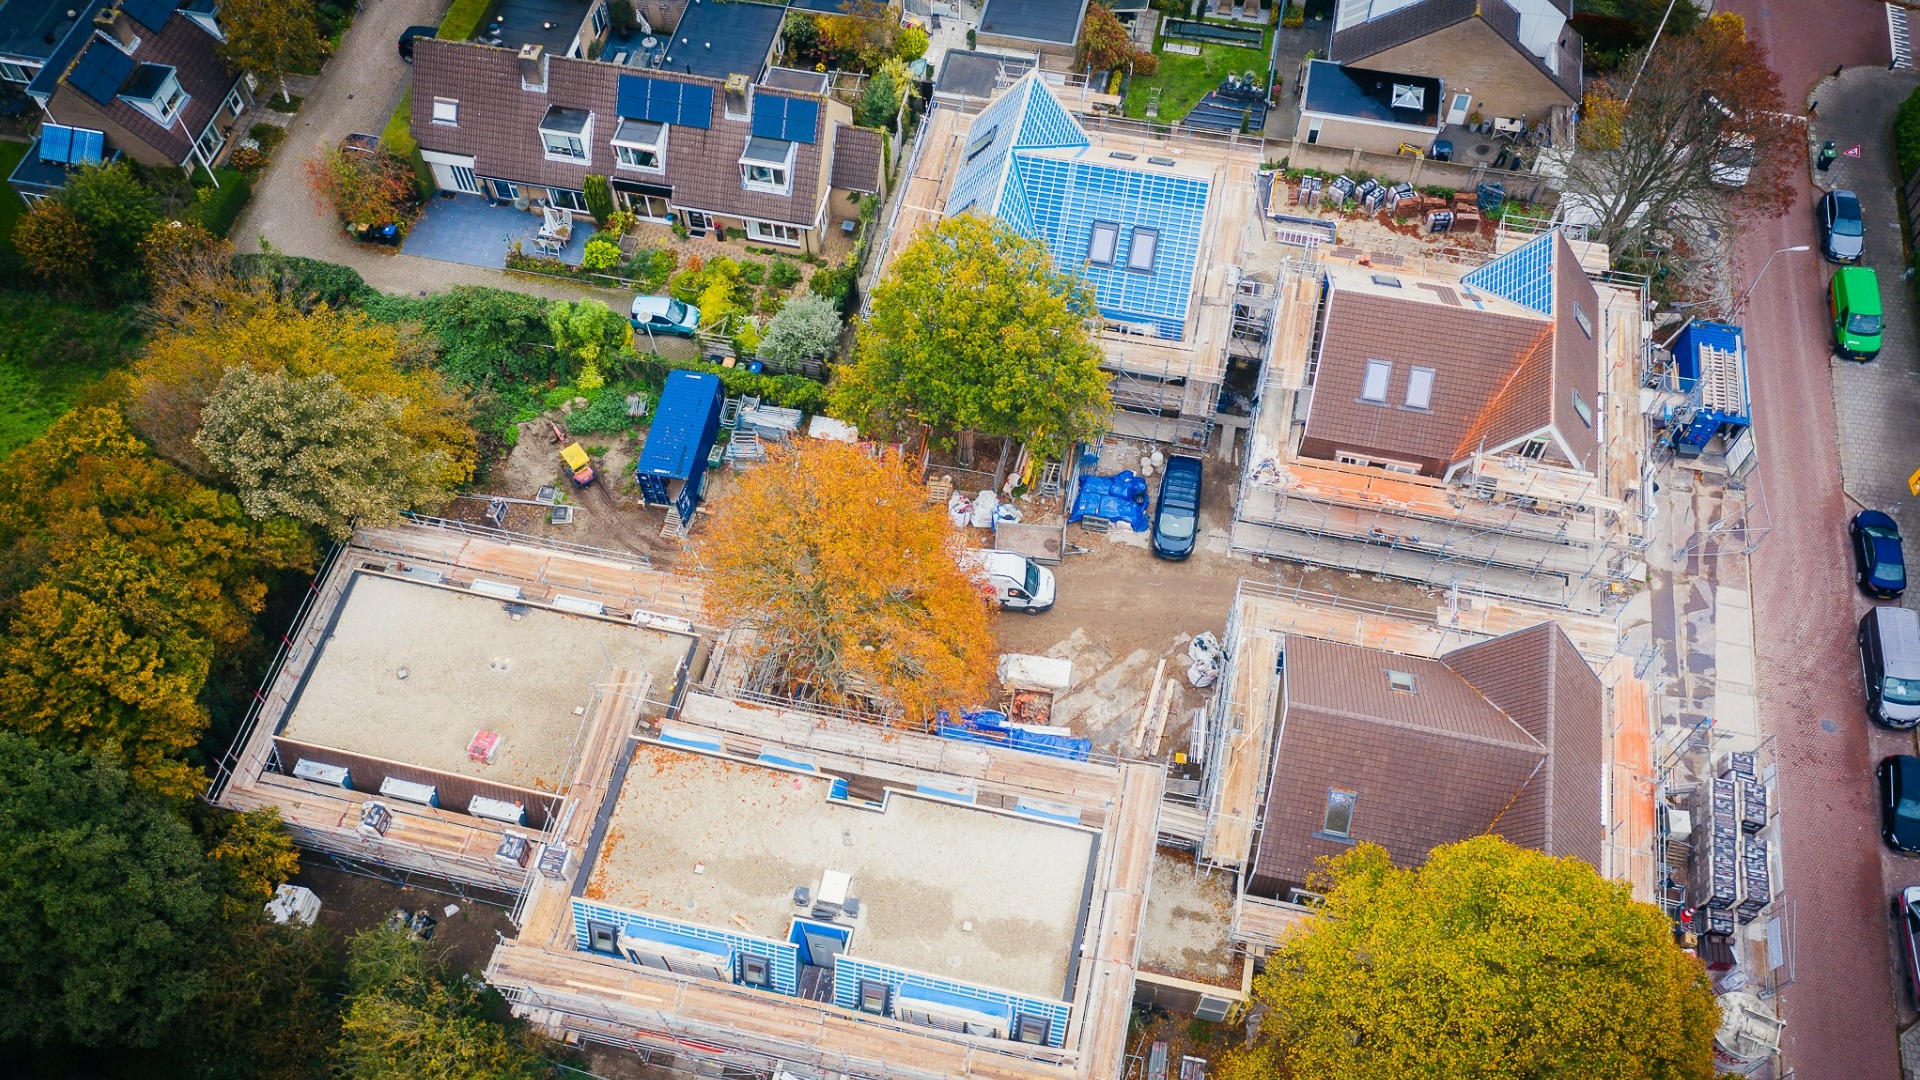  Prachtige luchtfoto's van Nieuwbouwproject Nicolaas Beetshof te Driehuis